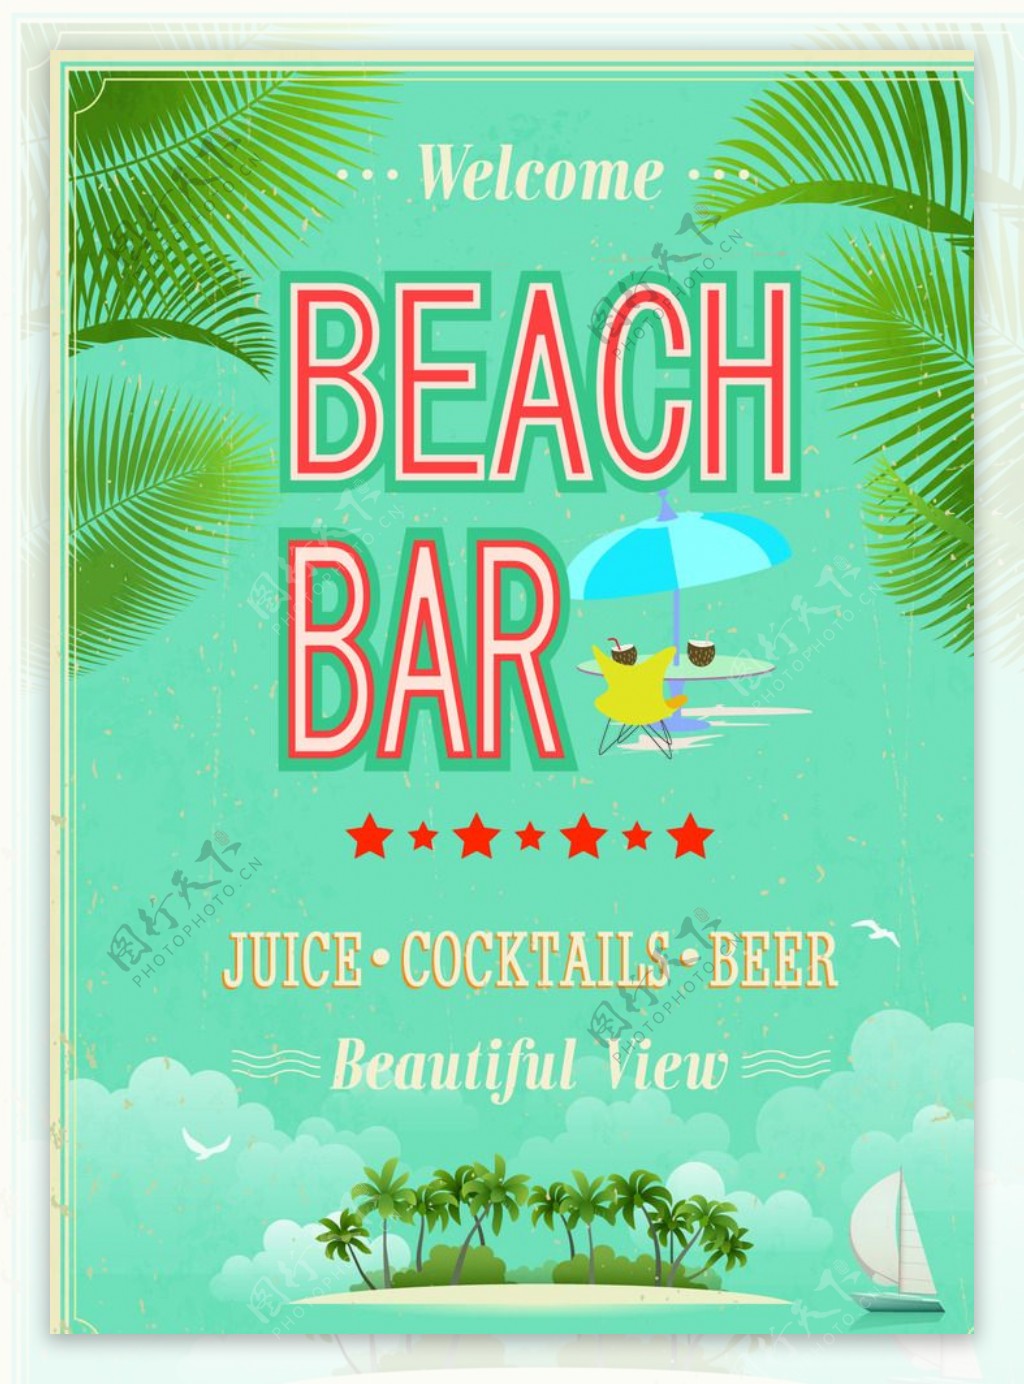 沙滩酒吧海报